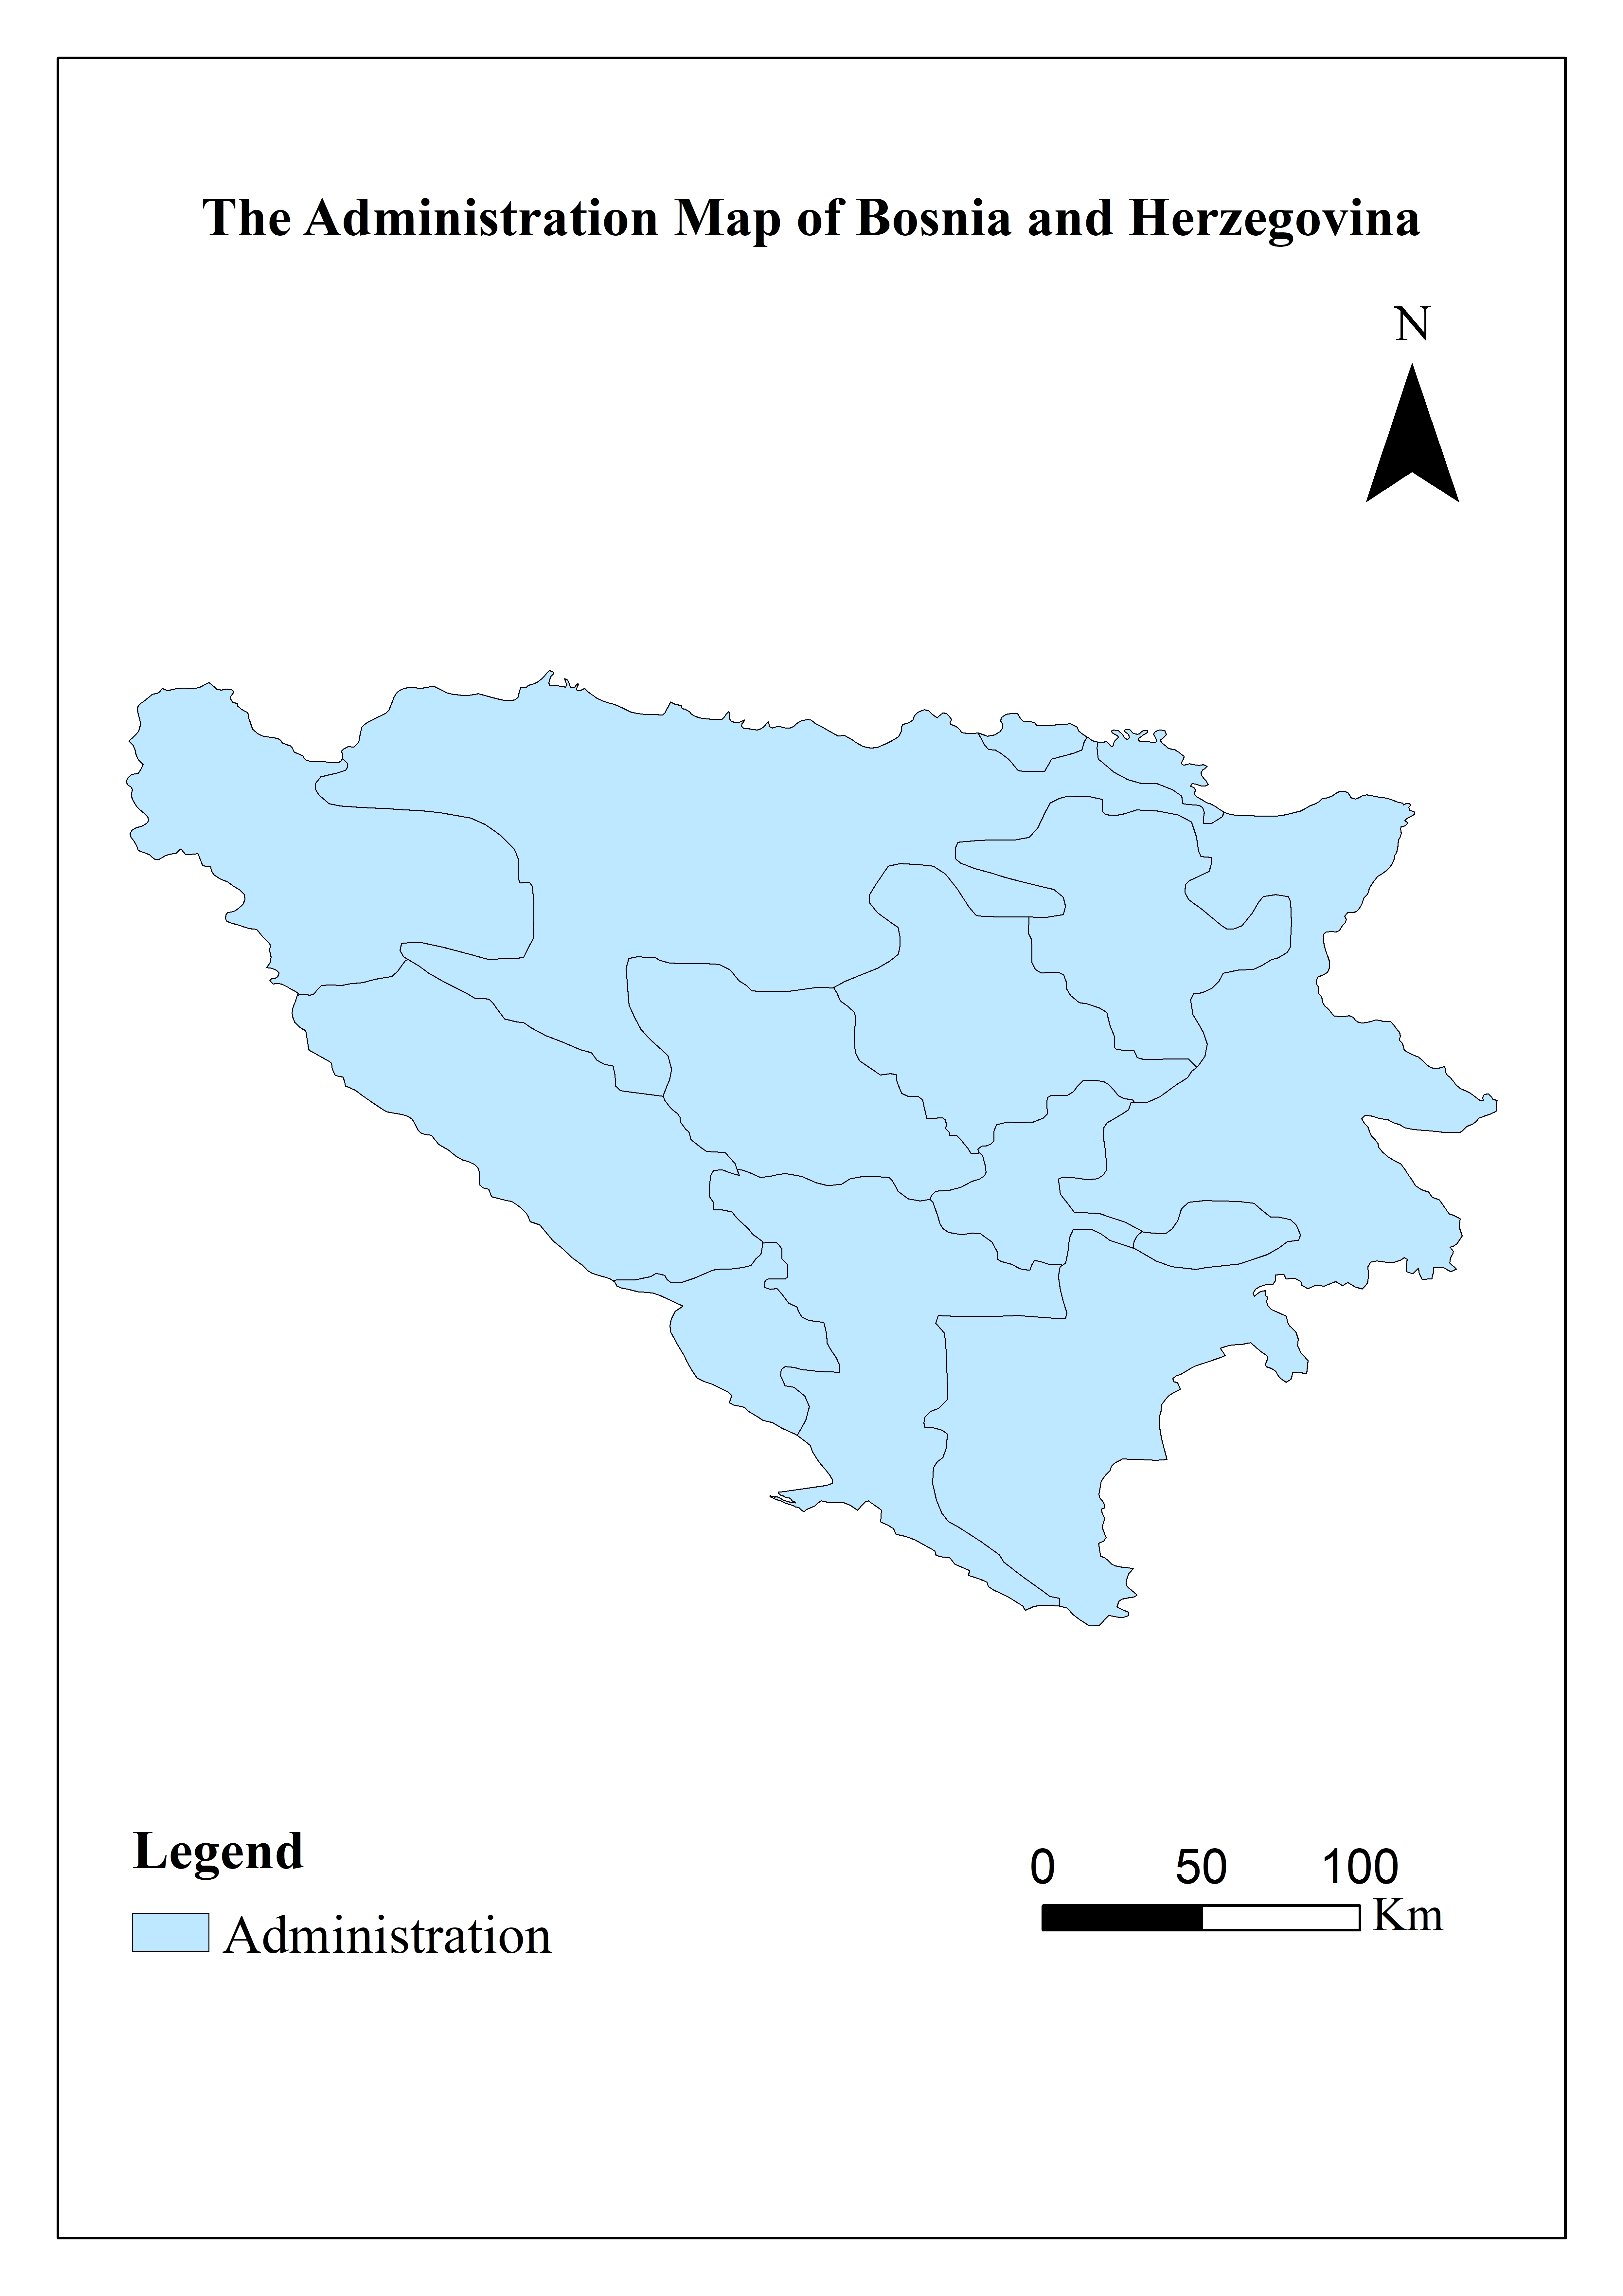 Basic national information database of Bosnia and Herzegovina